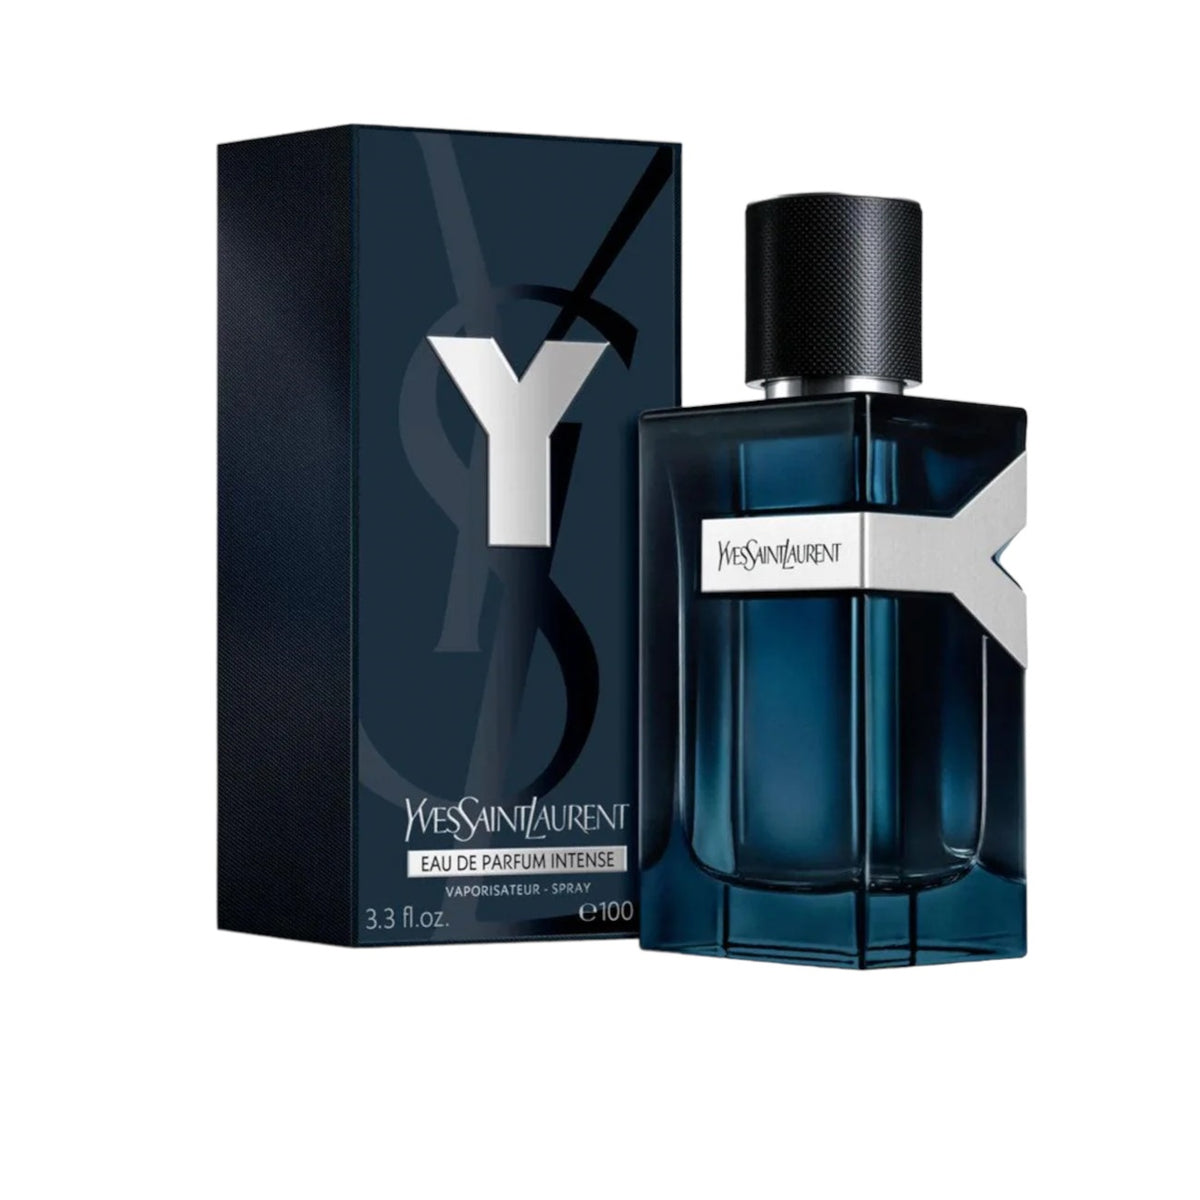 Yves Saint Laurent Men's Y Eau De Toilette Spray - 3.3 fl oz bottle